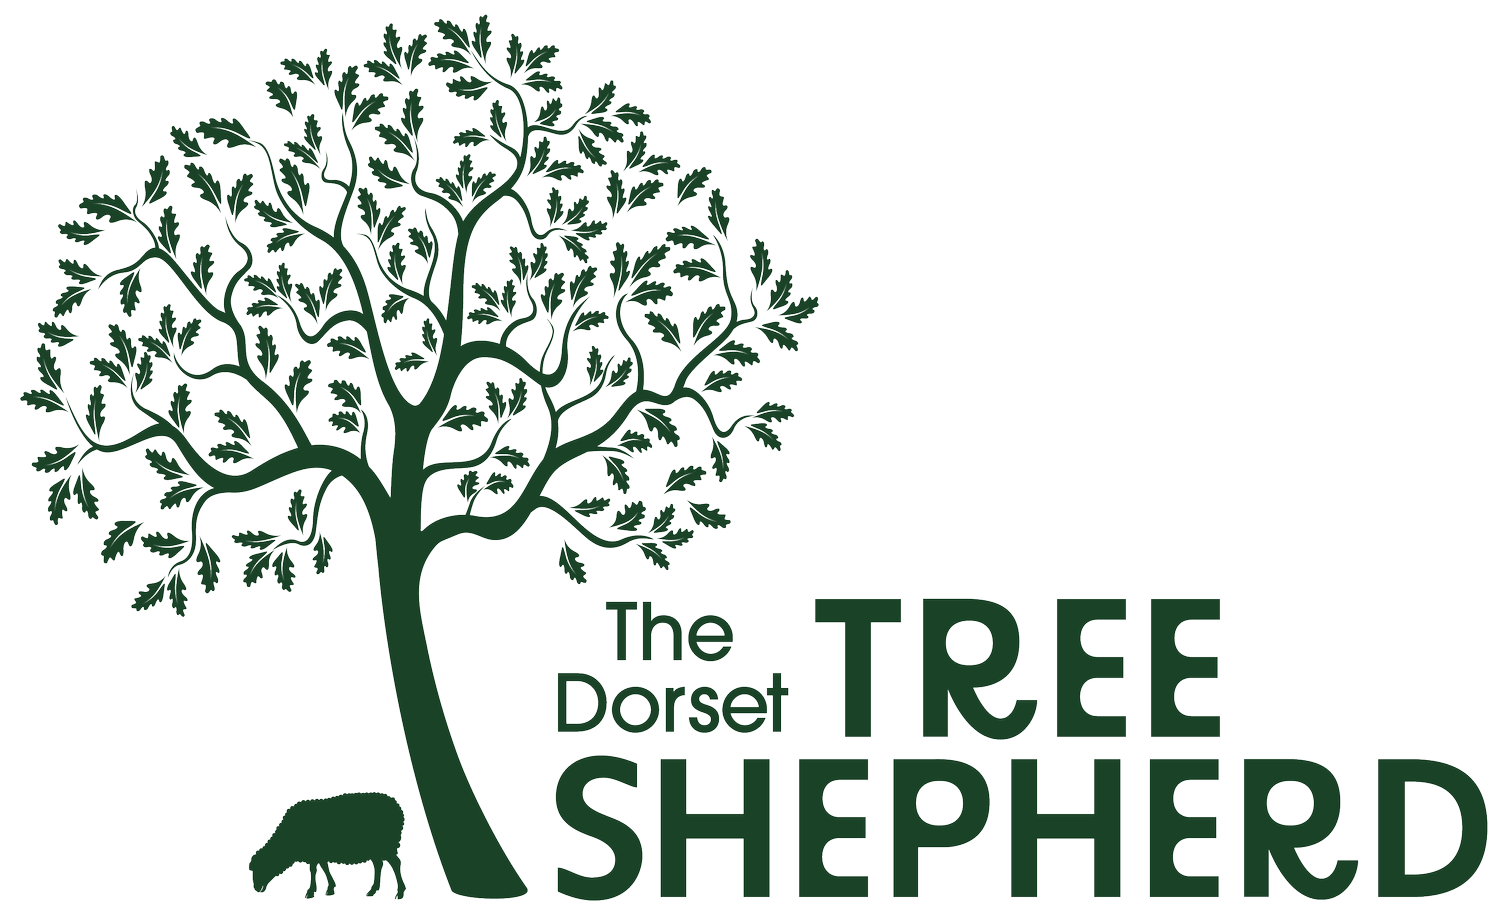 THE DORSET TREE SHEPHERD